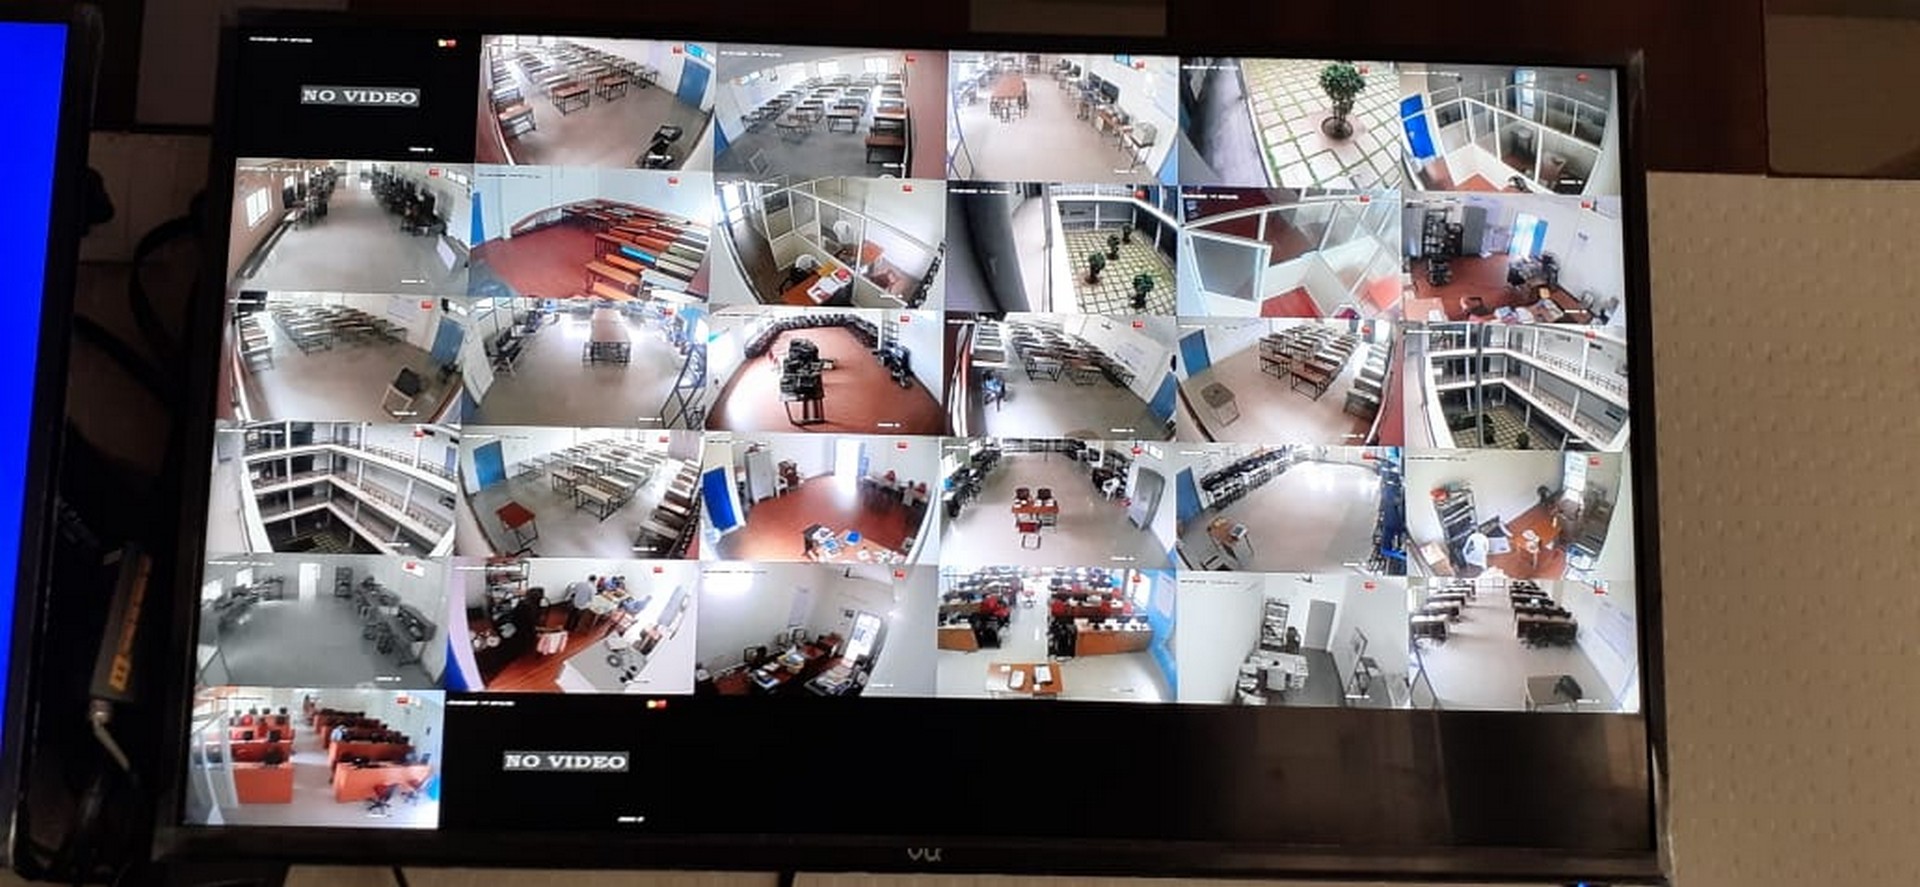 24x7 Security & Surveillance at KPRIT